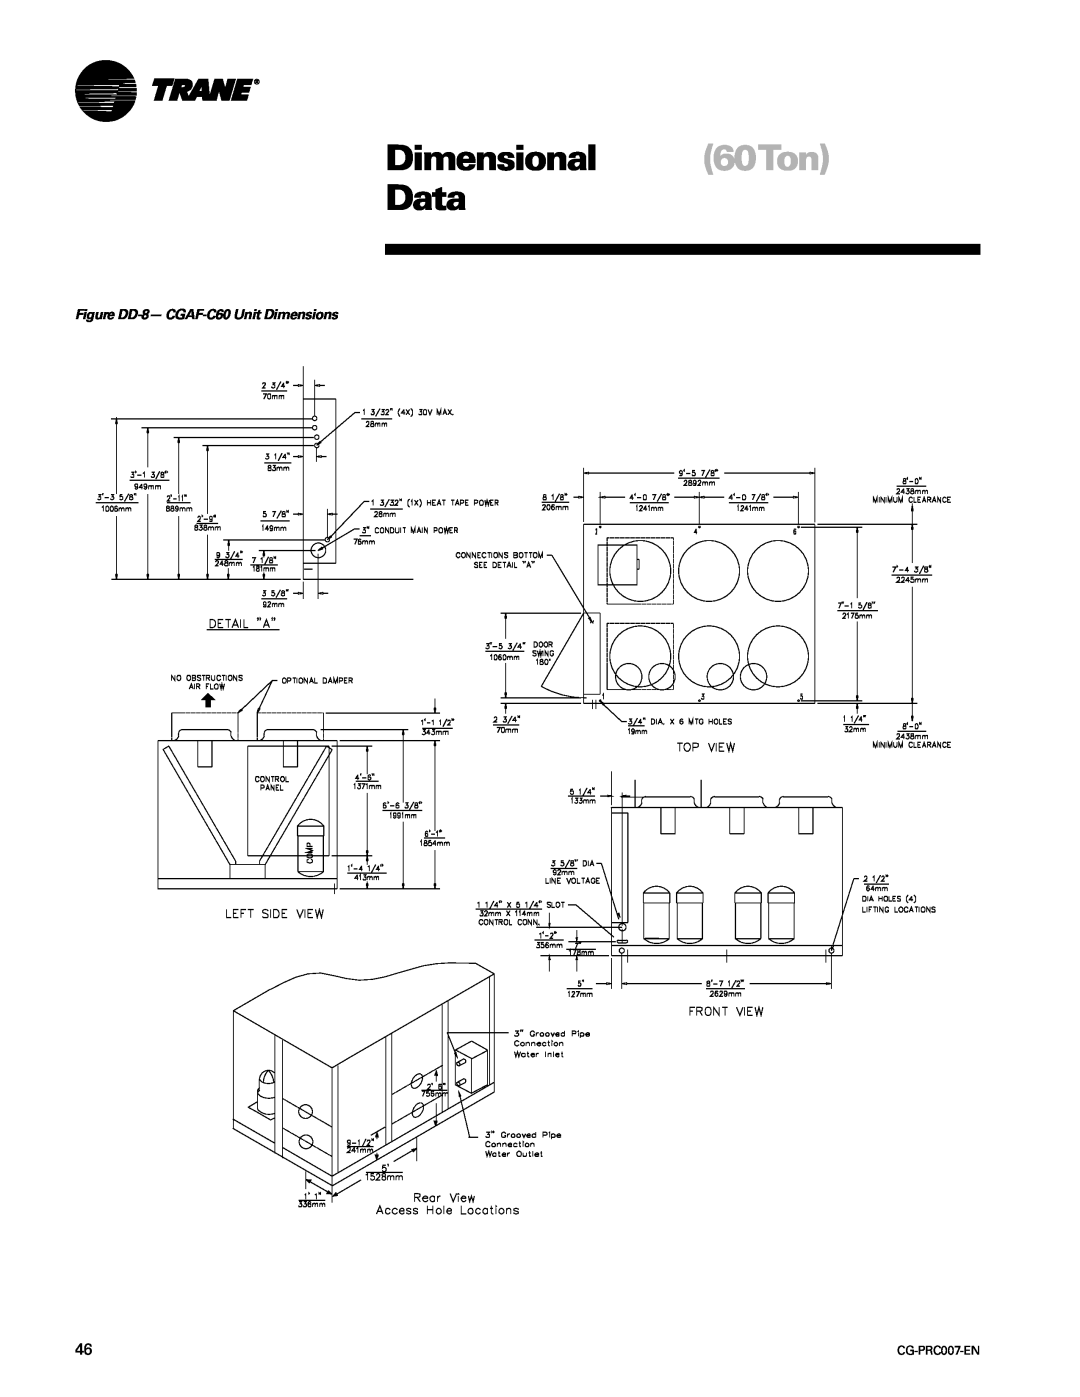 Trane CG-PRC007-EN manual Dimensional 60Ton Data, Figure DD-8- CGAF-C60Unit Dimensions 